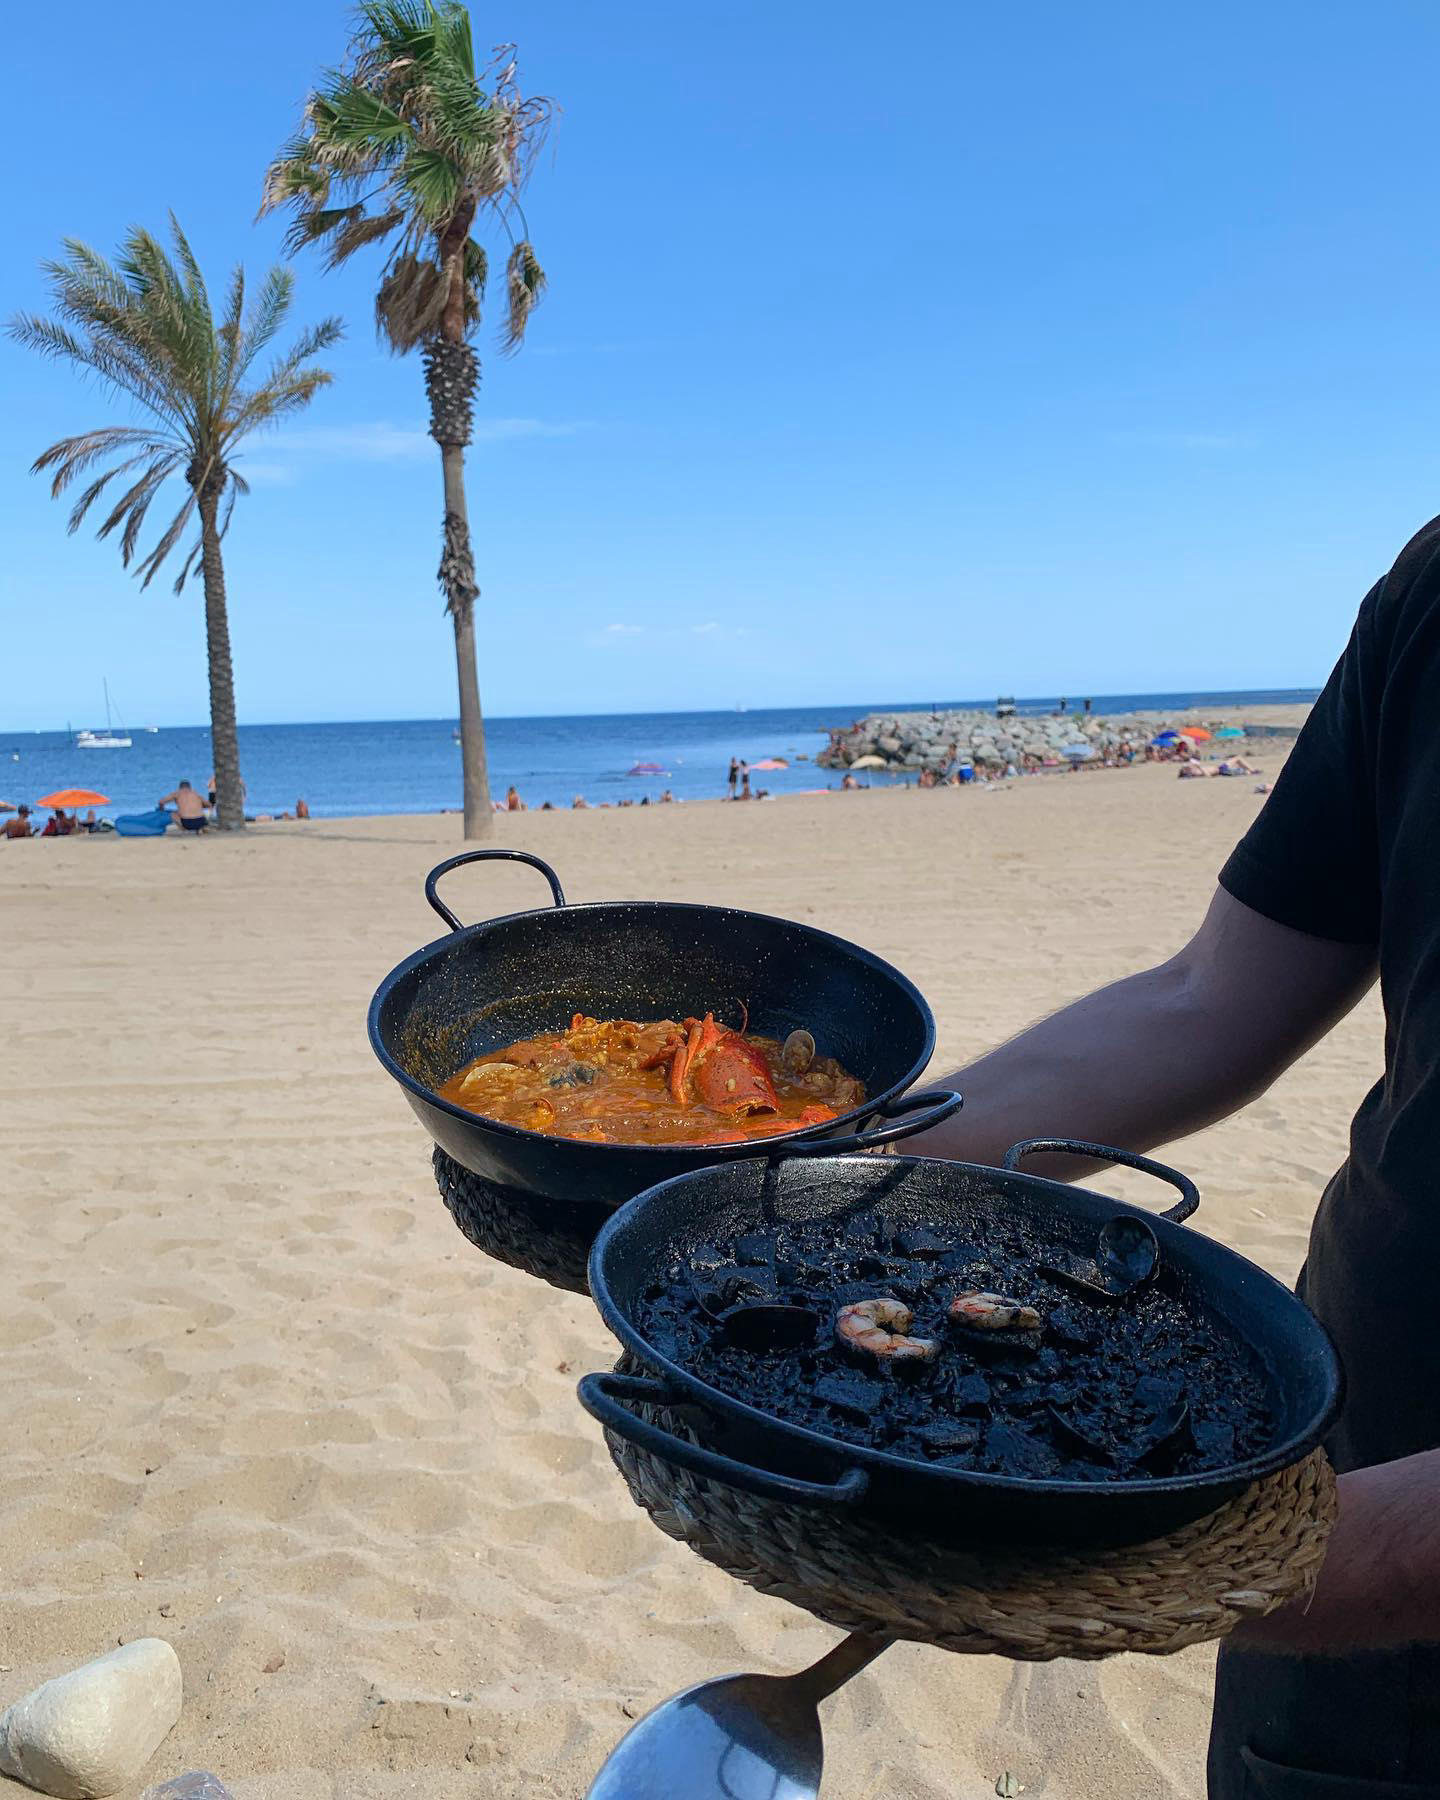 Buscamos Terrazas Barcelona - Disfrutando mucho de la terracita a pie de playa